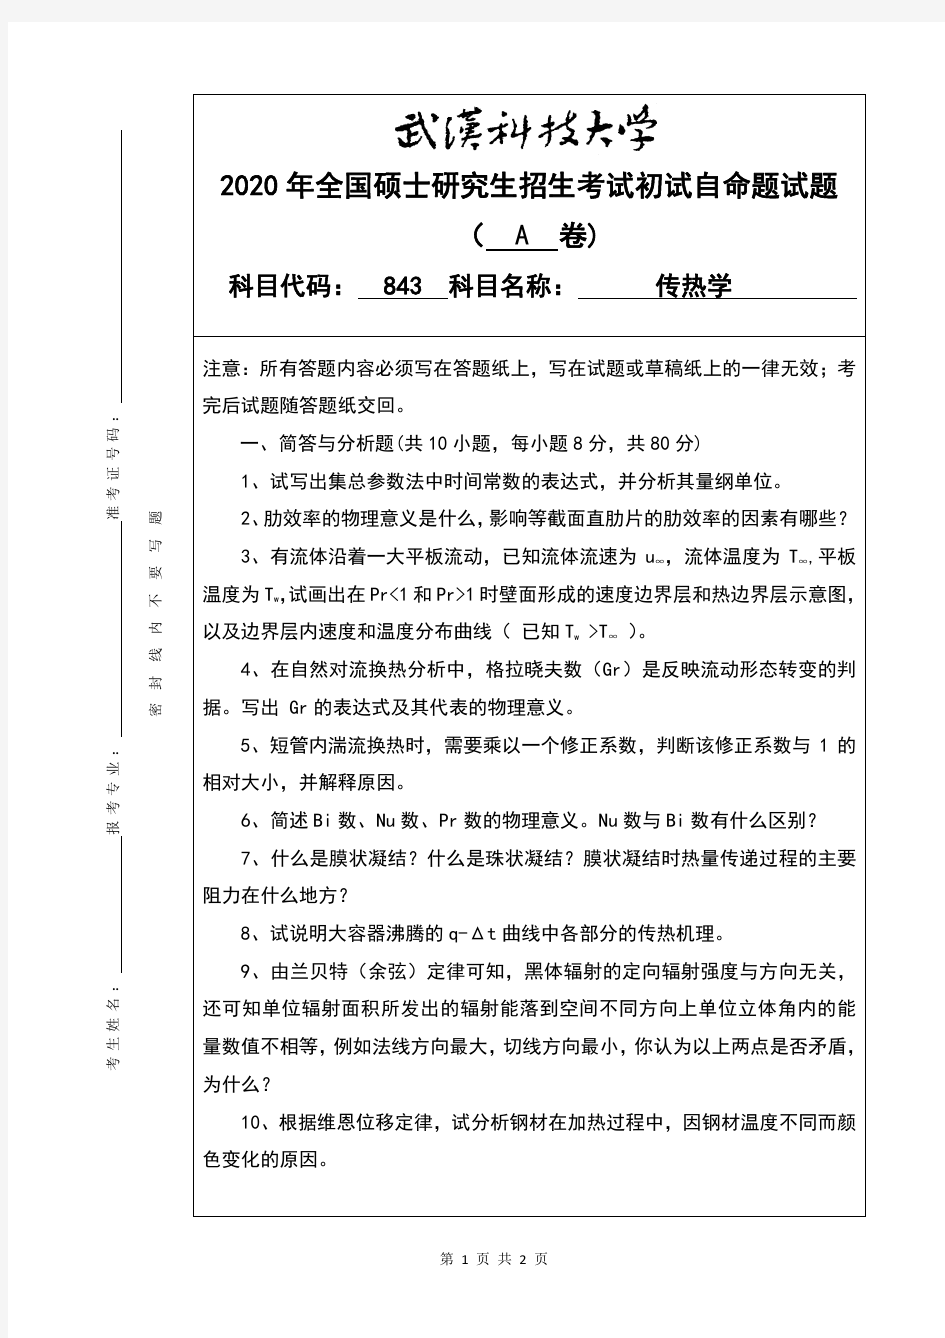 武汉科技大学843传热学考研真题(含标准答案)2020年